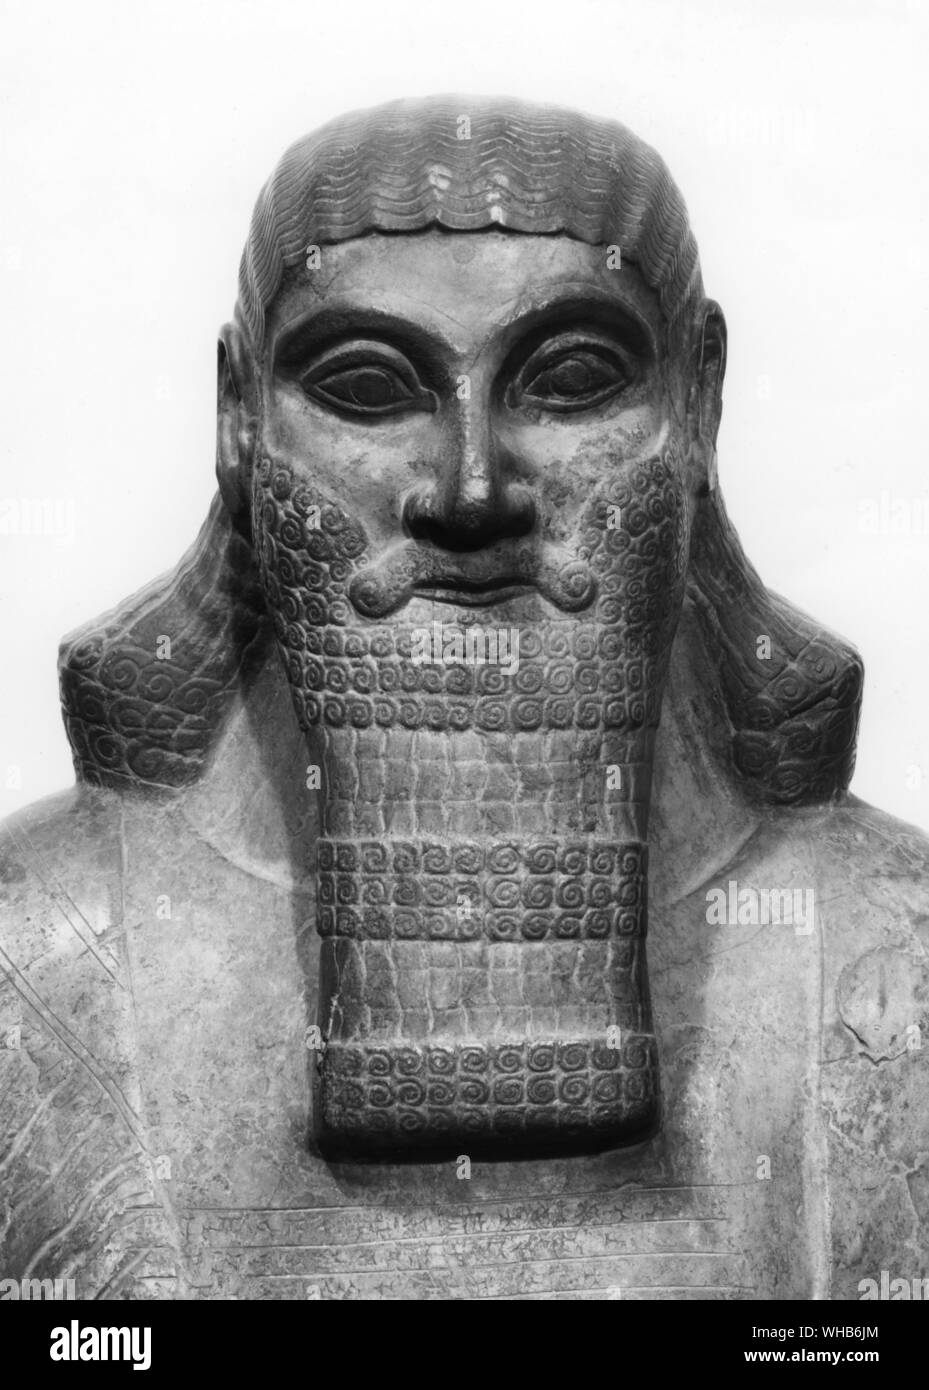 Statue d'Assurnazirpal II (884-859 AD) de Nimrud.. Ashur-nasir-pal II (translittération Ashshur-nâsir-apli, sens Ashur est tuteur de l'héritier) fut roi d'Assyrie de 884 av. J.-C.-859 av. J.-C... Nimrud est une ancienne ville assyrienne située au sud de Ninive sur le tigre.. Banque D'Images